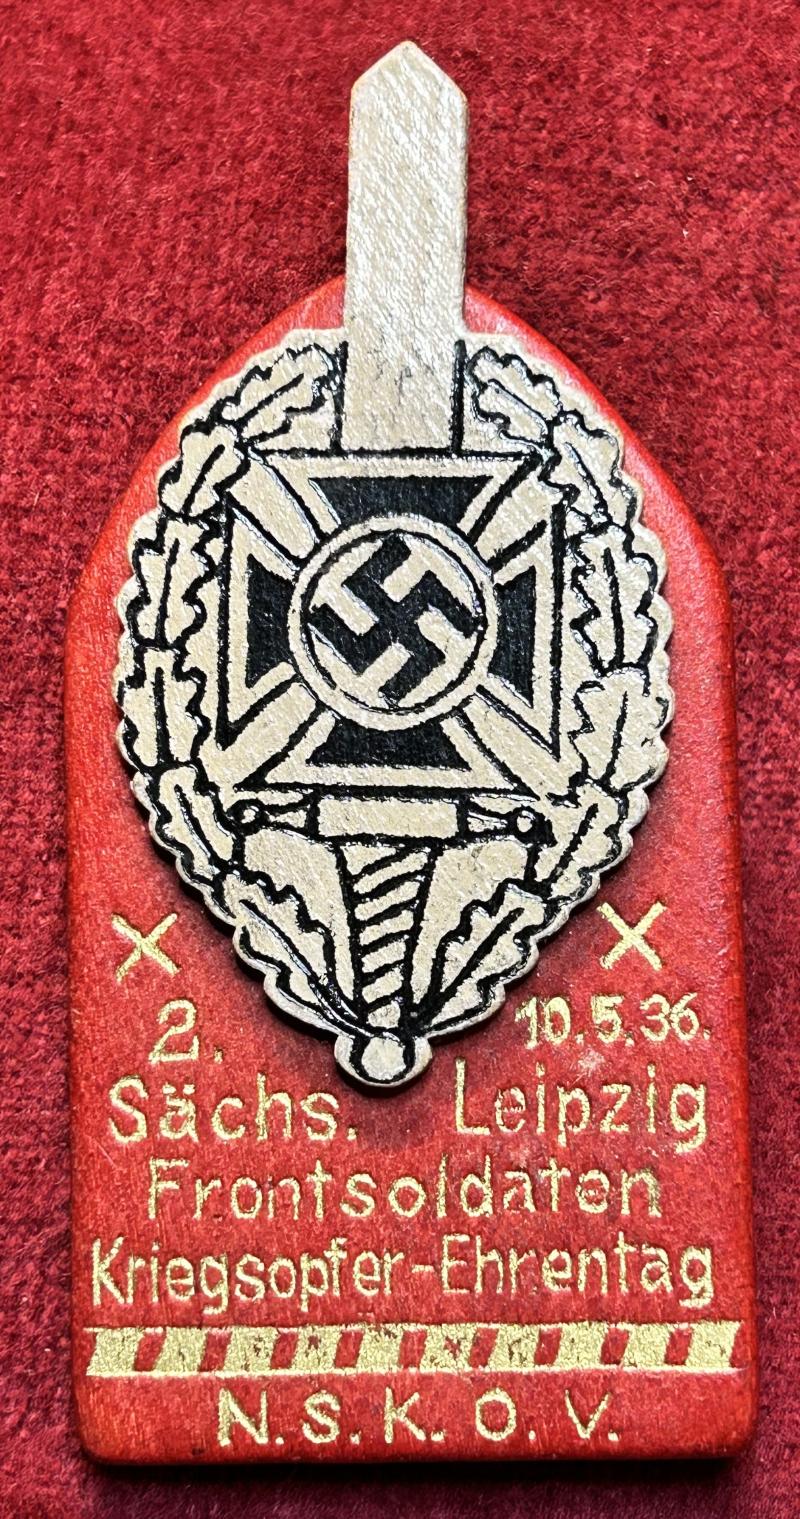 3rd Reich NSKOV Sächsische Leipzig Frontsoldaten und Kriegsopfer-Ehrentag